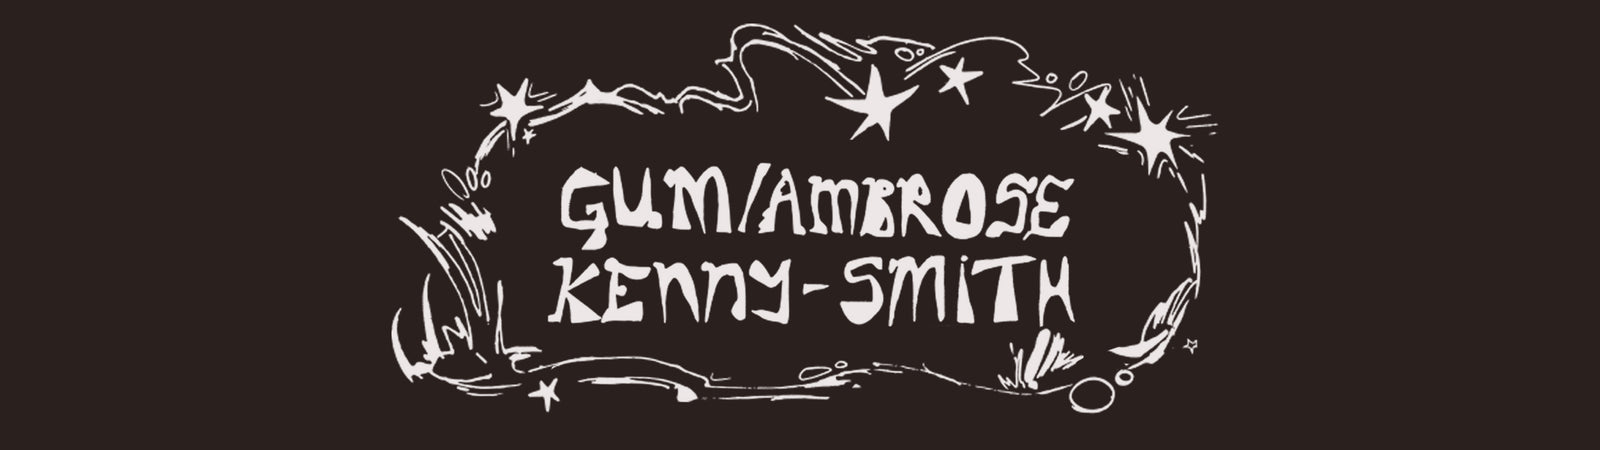 Gum/Ambrose